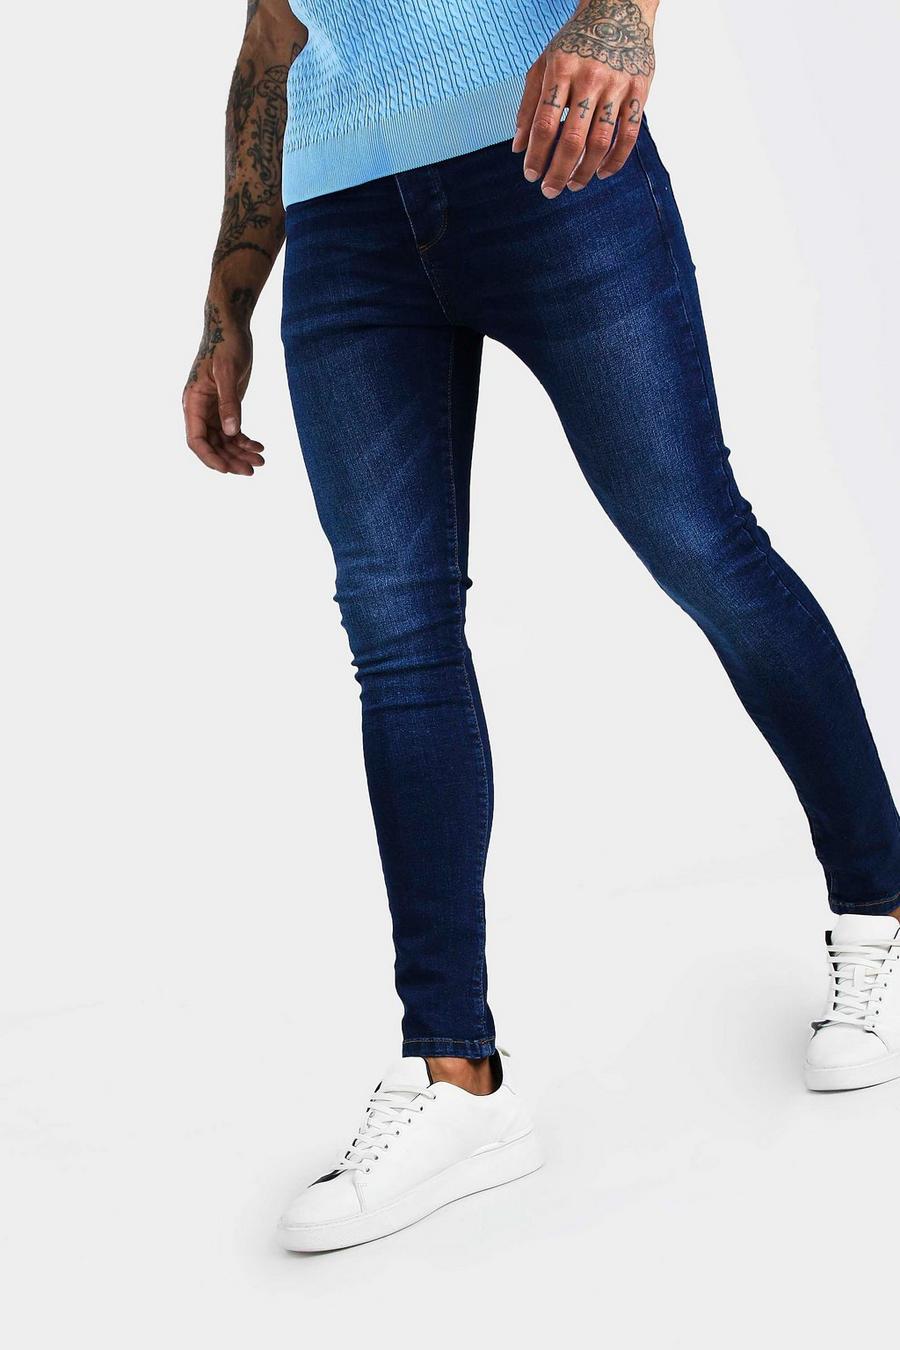 Jeans neri denim effetto lavato taglio super skinny, Indaco effetto lavato image number 1